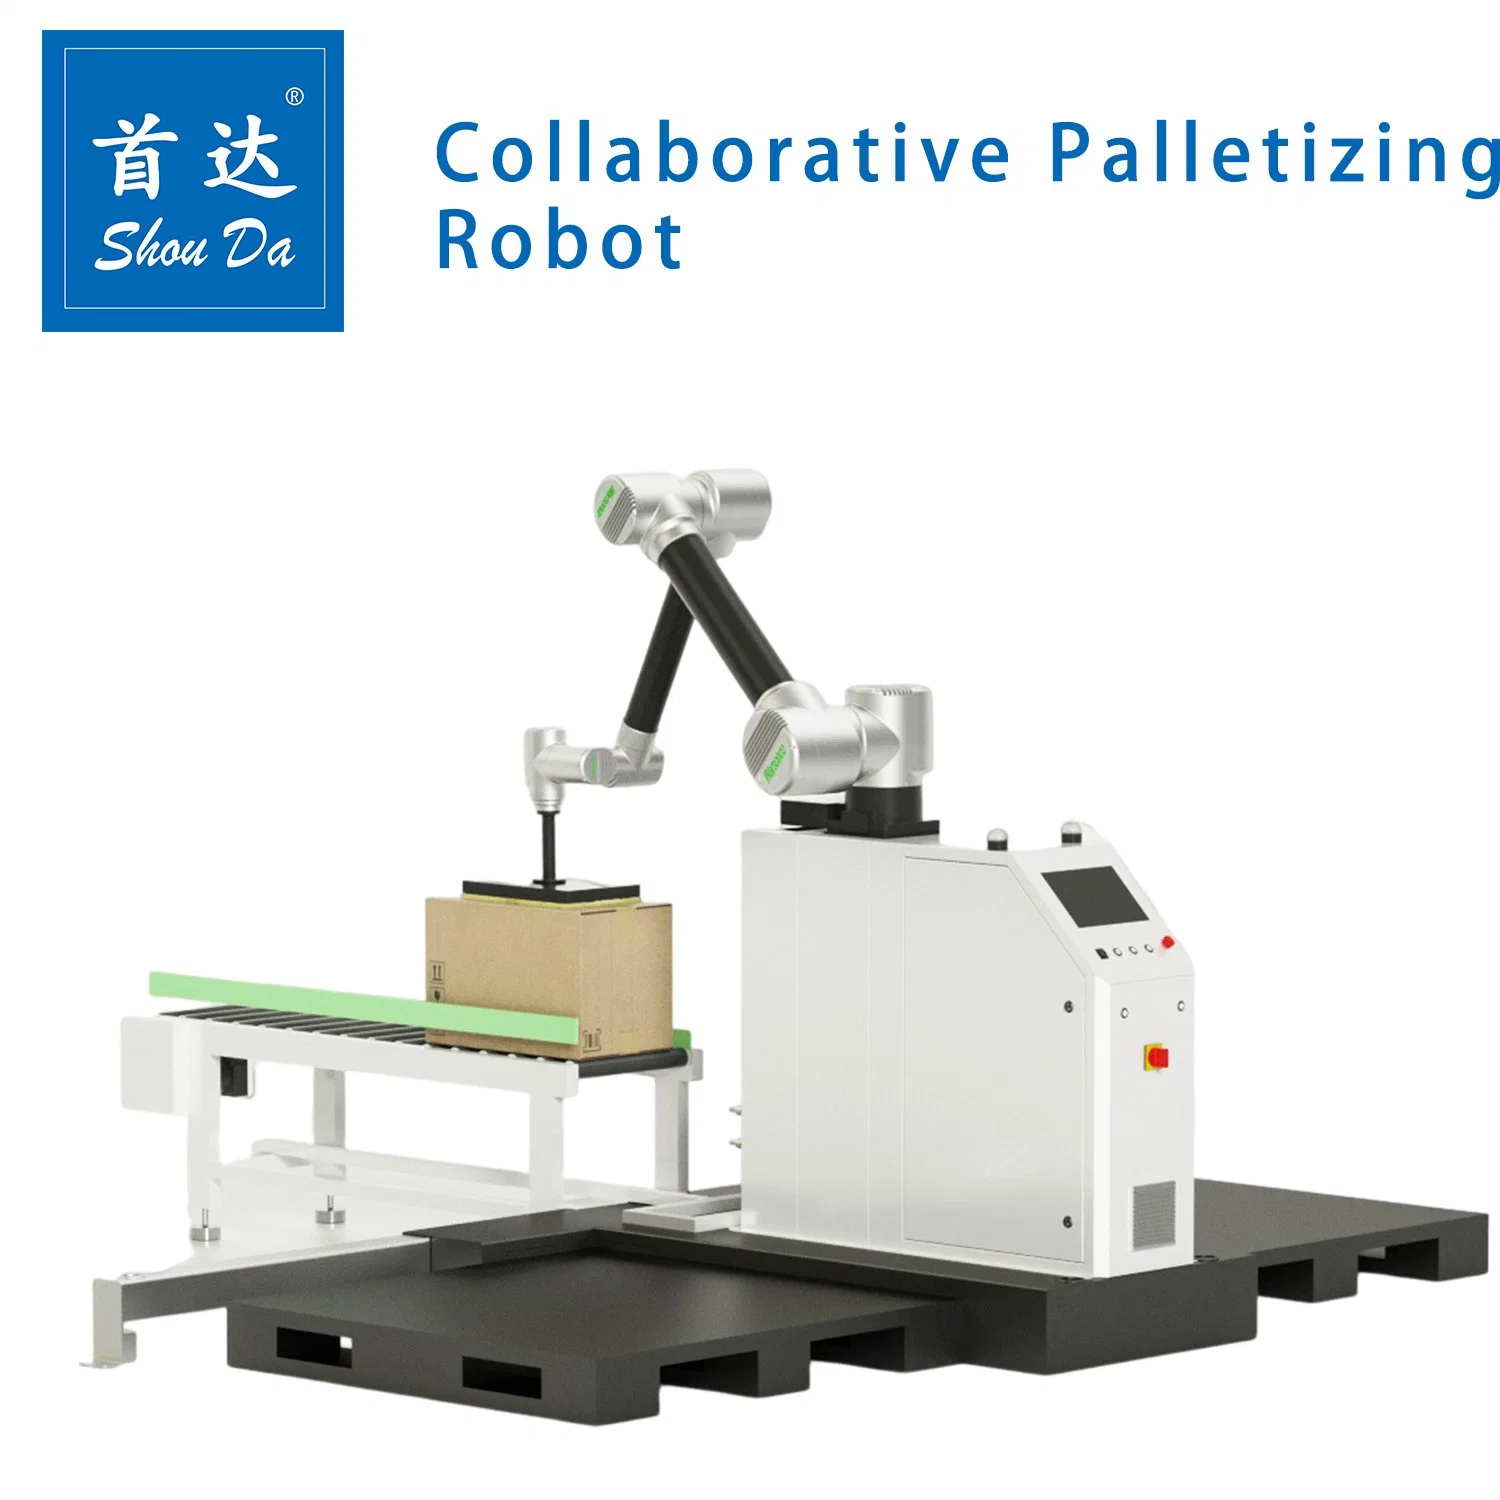 Boa generalidade integração flexível Carton Cans Case Robotic Paletizer Machine Linha de Embalagem